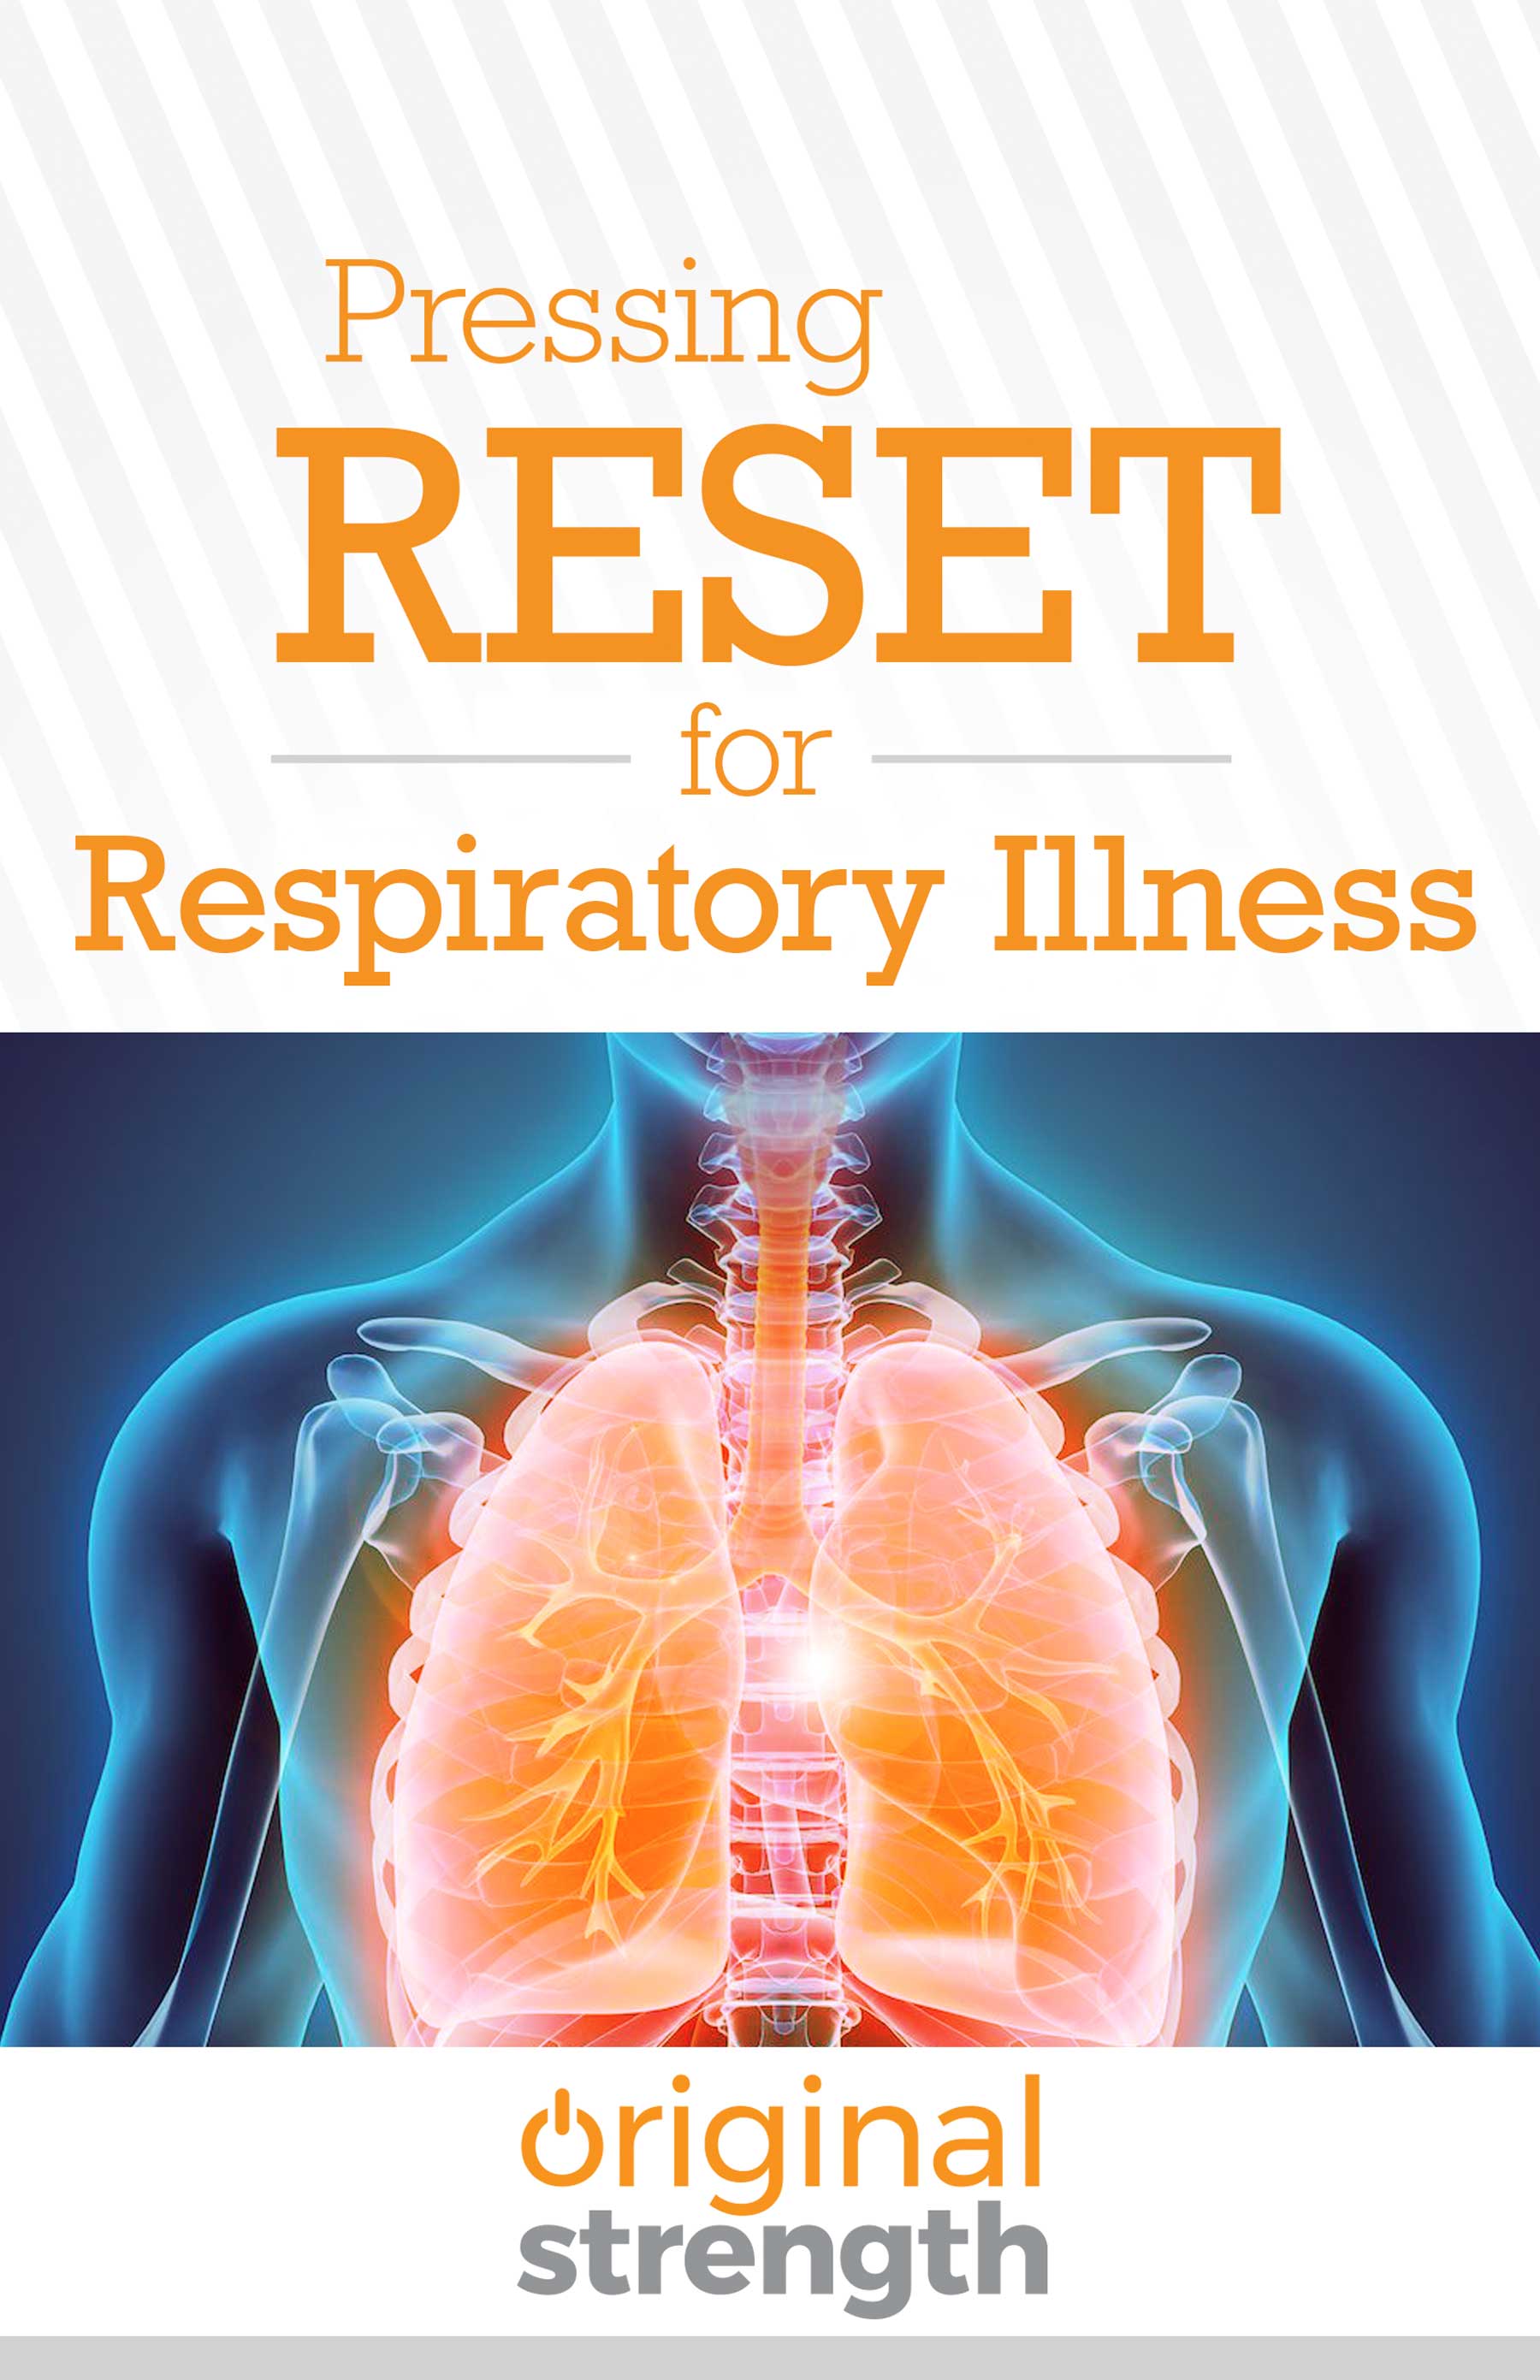 OS Pressing RESET for Respiratory Illness-Books